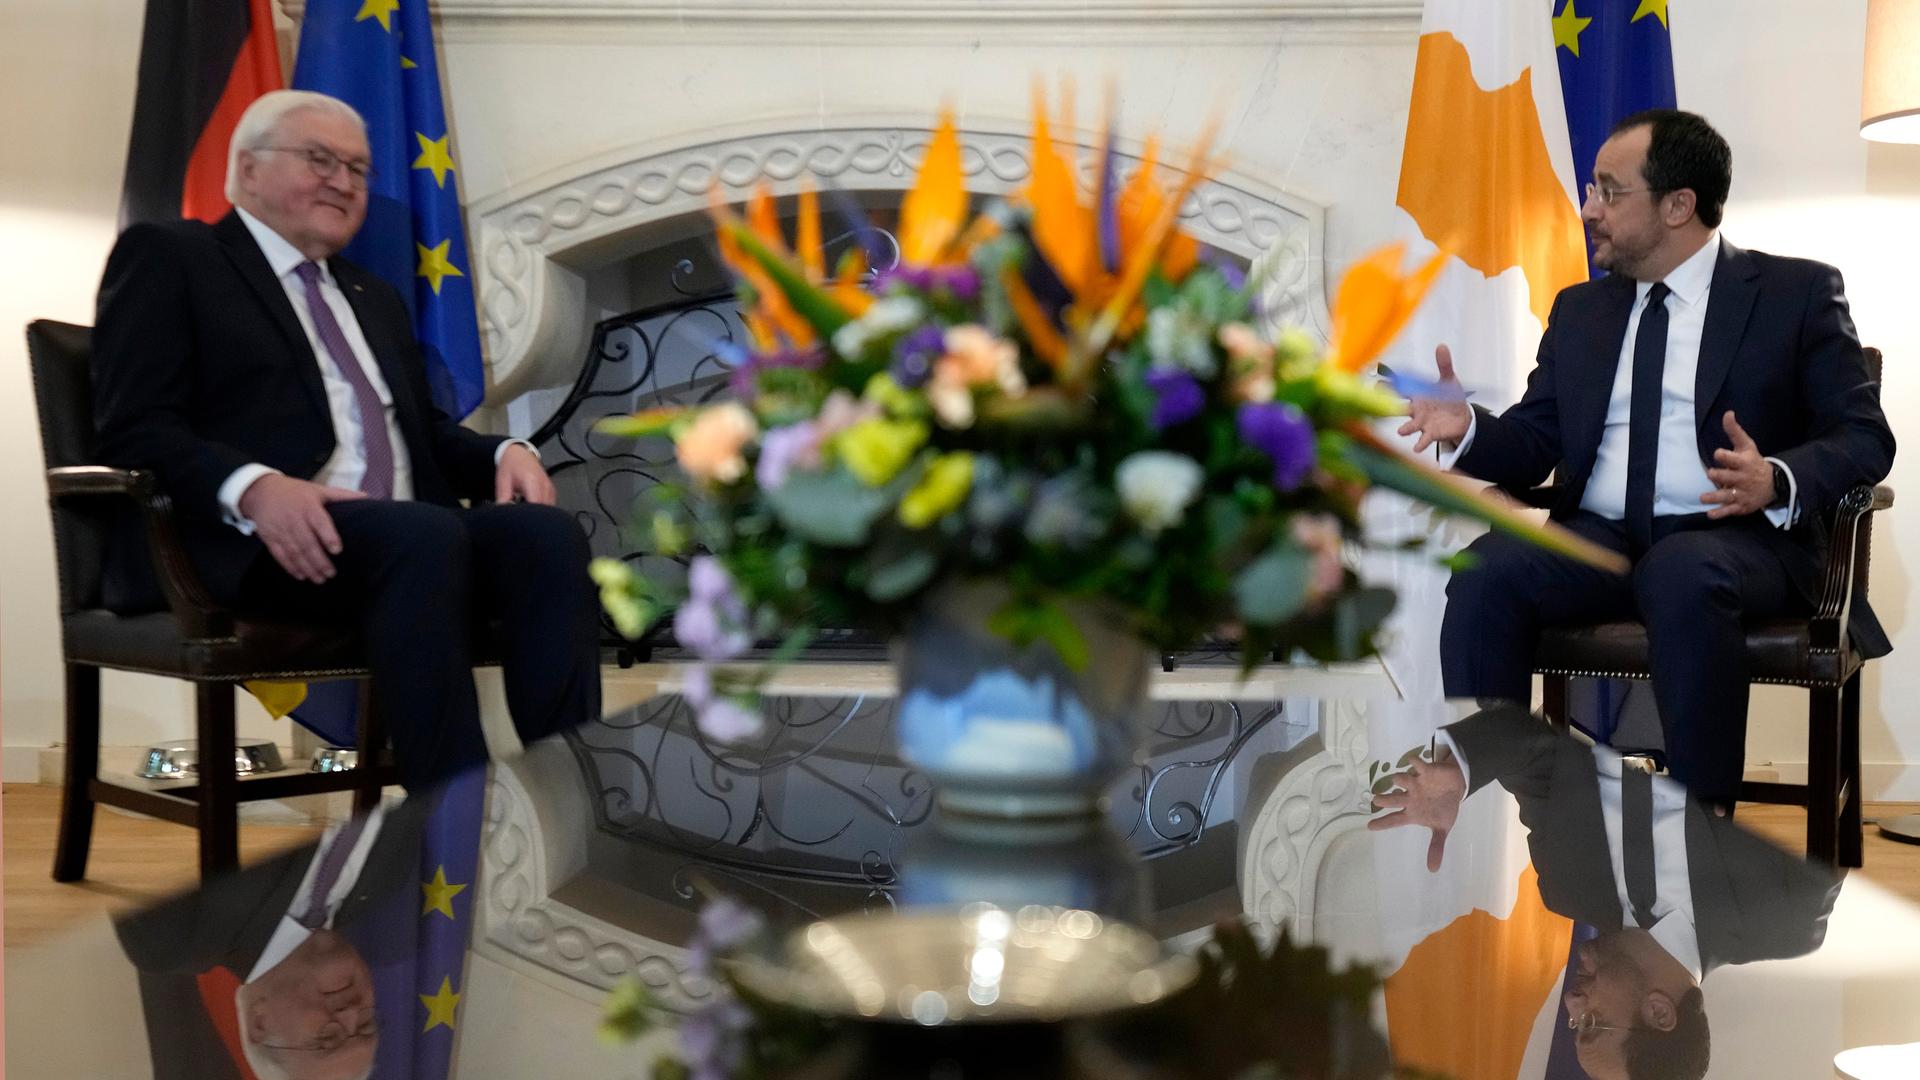 Bundespräsident Steinmeier sitzt dem zyprischen Präsident Christodoulides gegenüber. Zwischen ihnen im Vordergrund des Bildes steht ein großer Blumenstrauß.